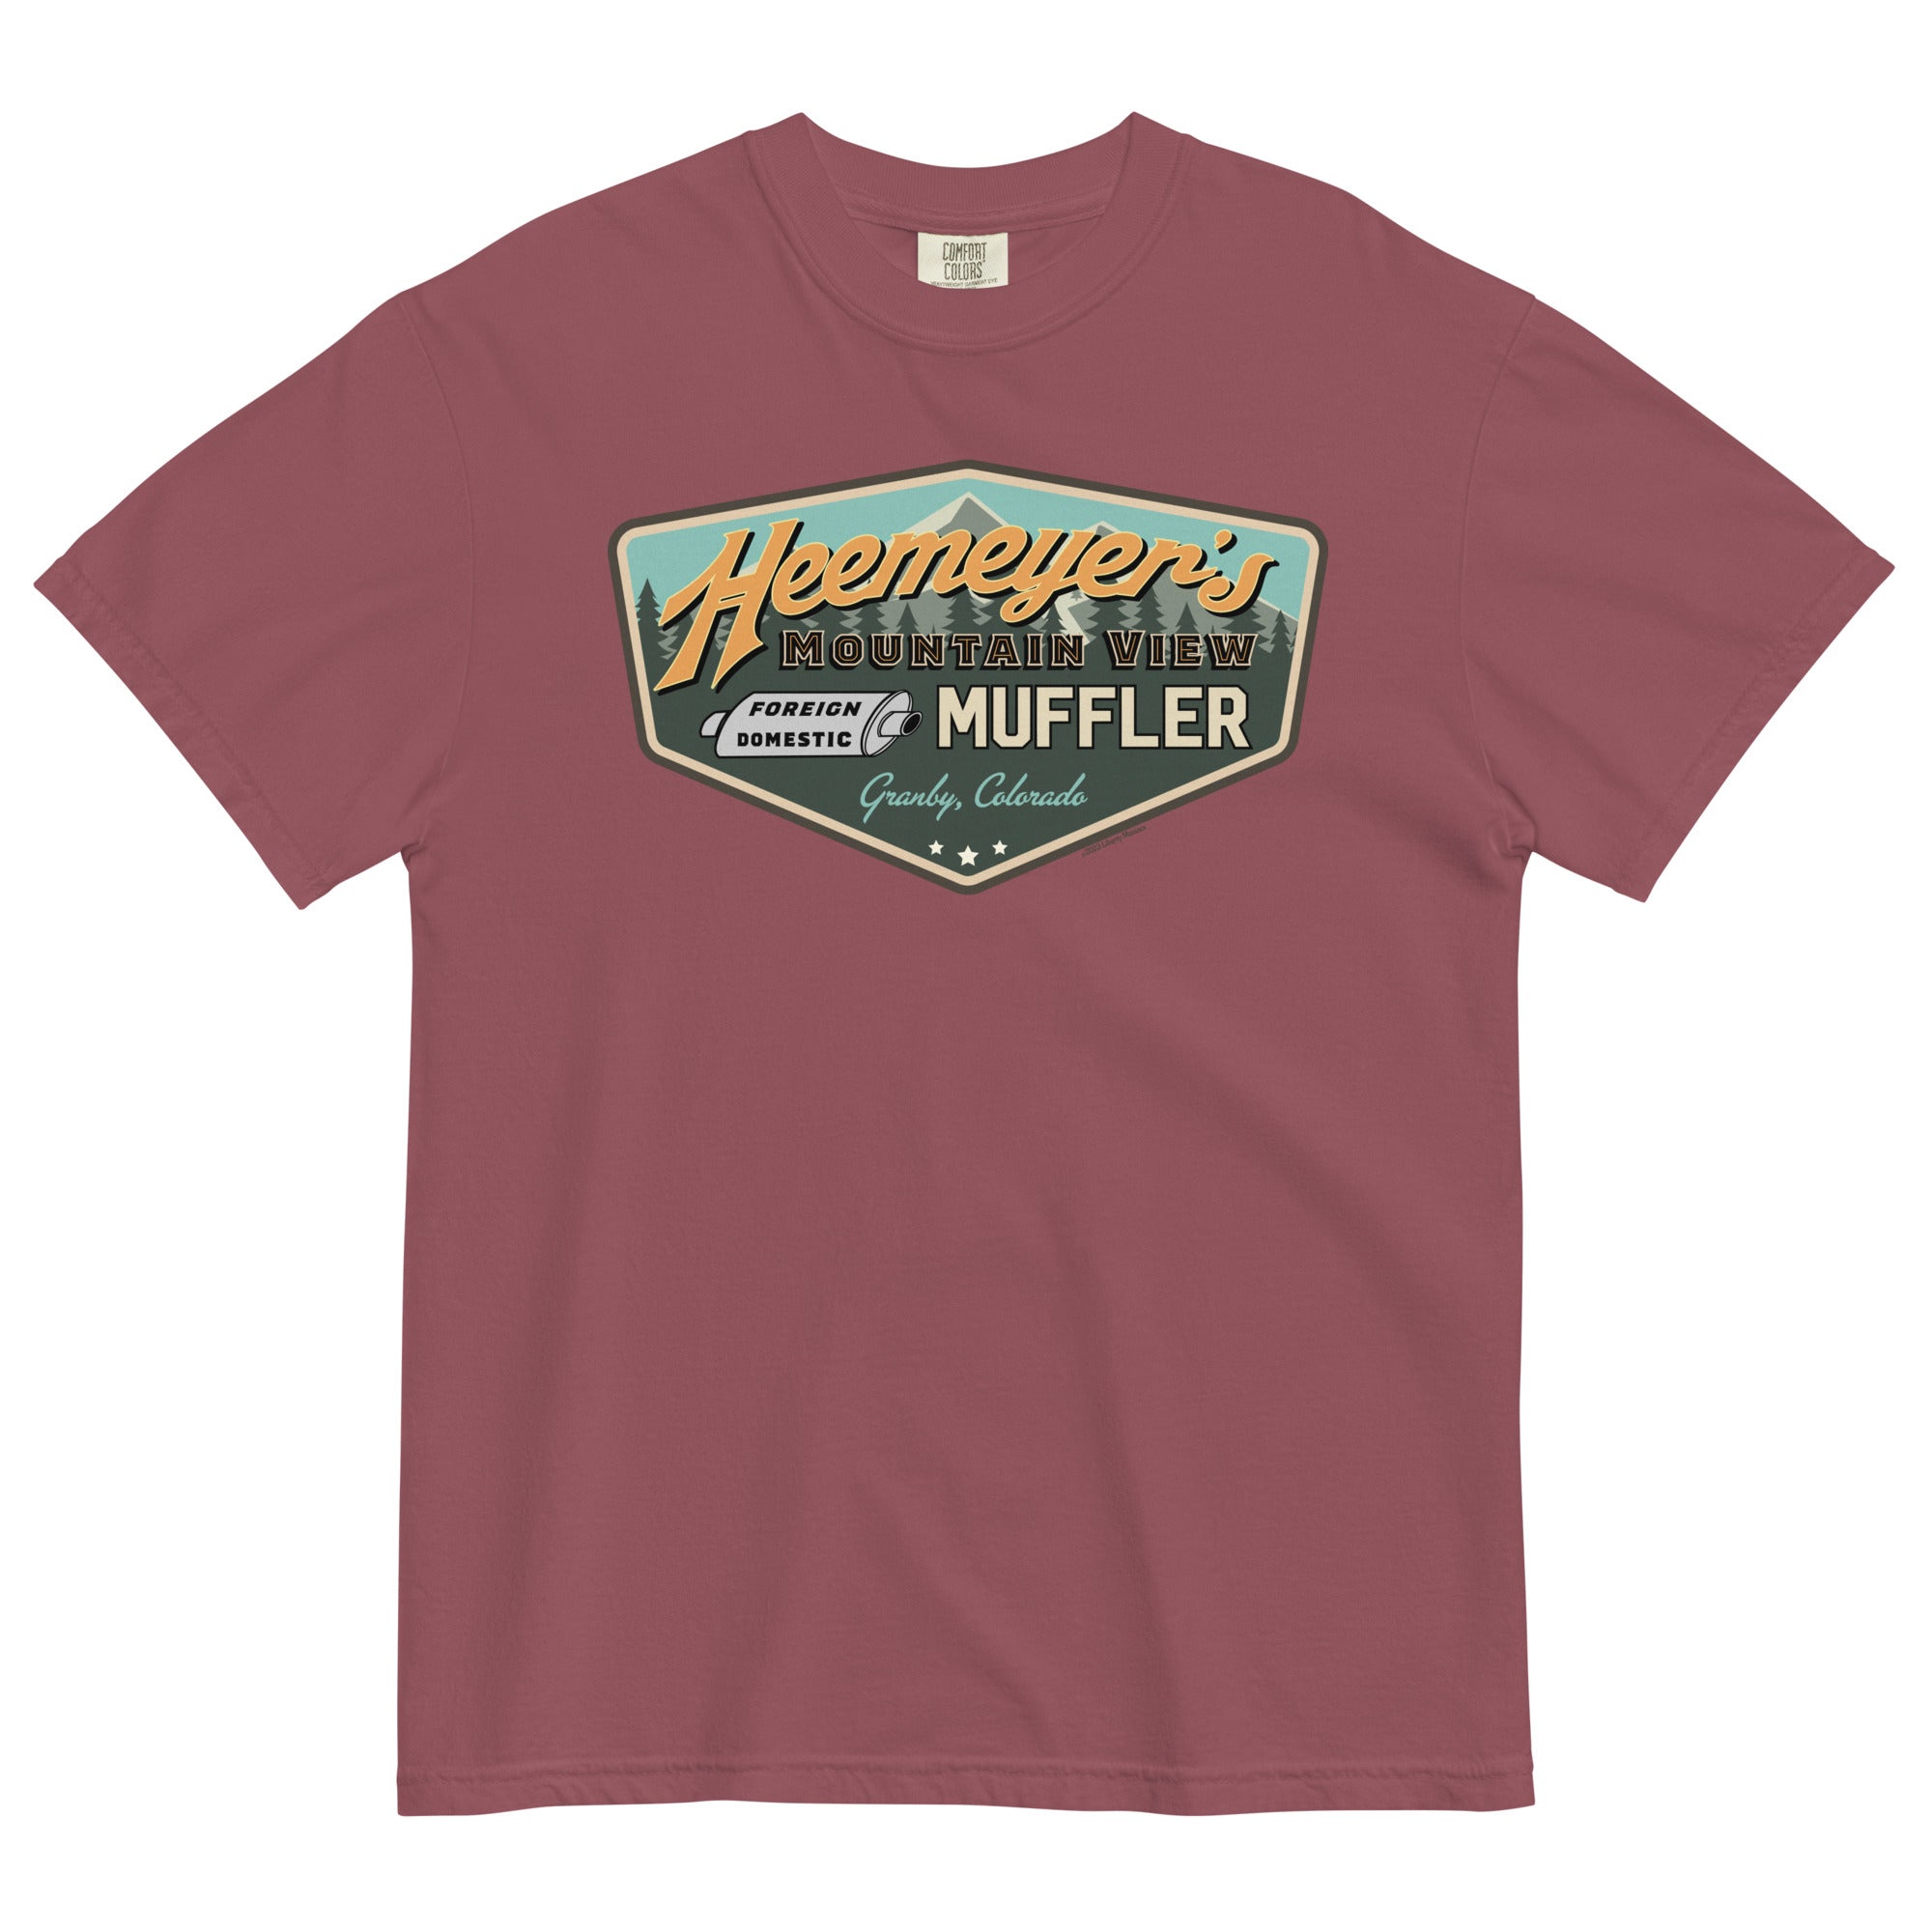 Heemeyer's Mountain View Muffler Garment-Dyed Heavyweight T-Shirt